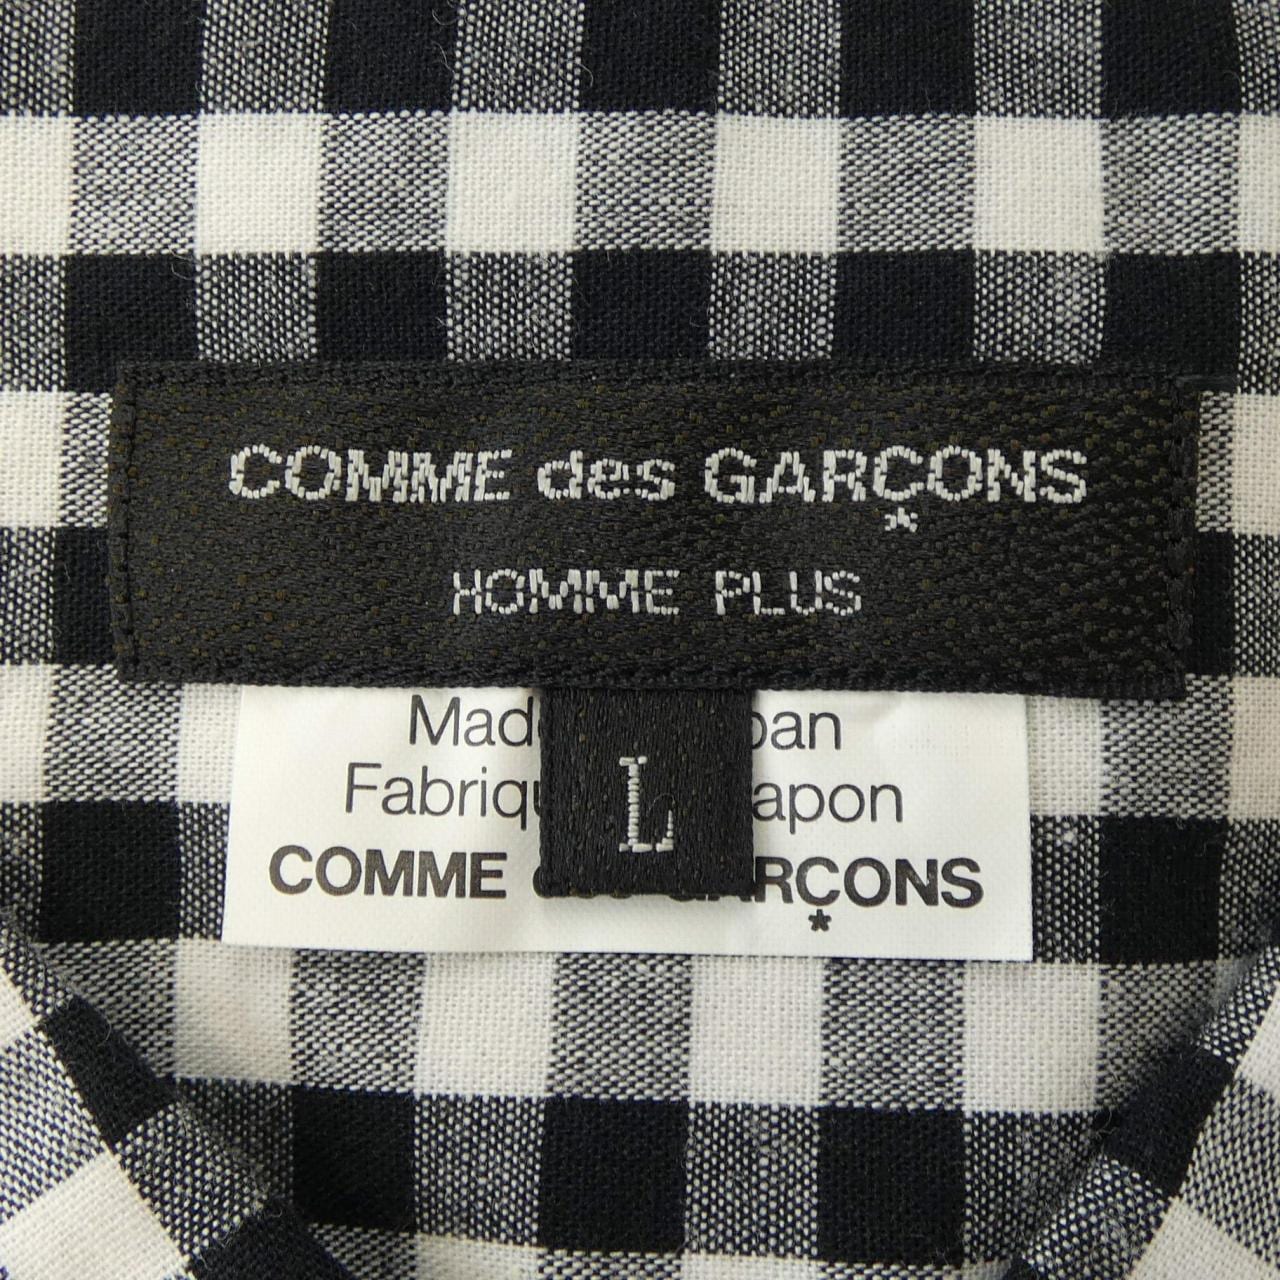 COMDEGALSONU PURUS GARCONS HOMME plus襯衫